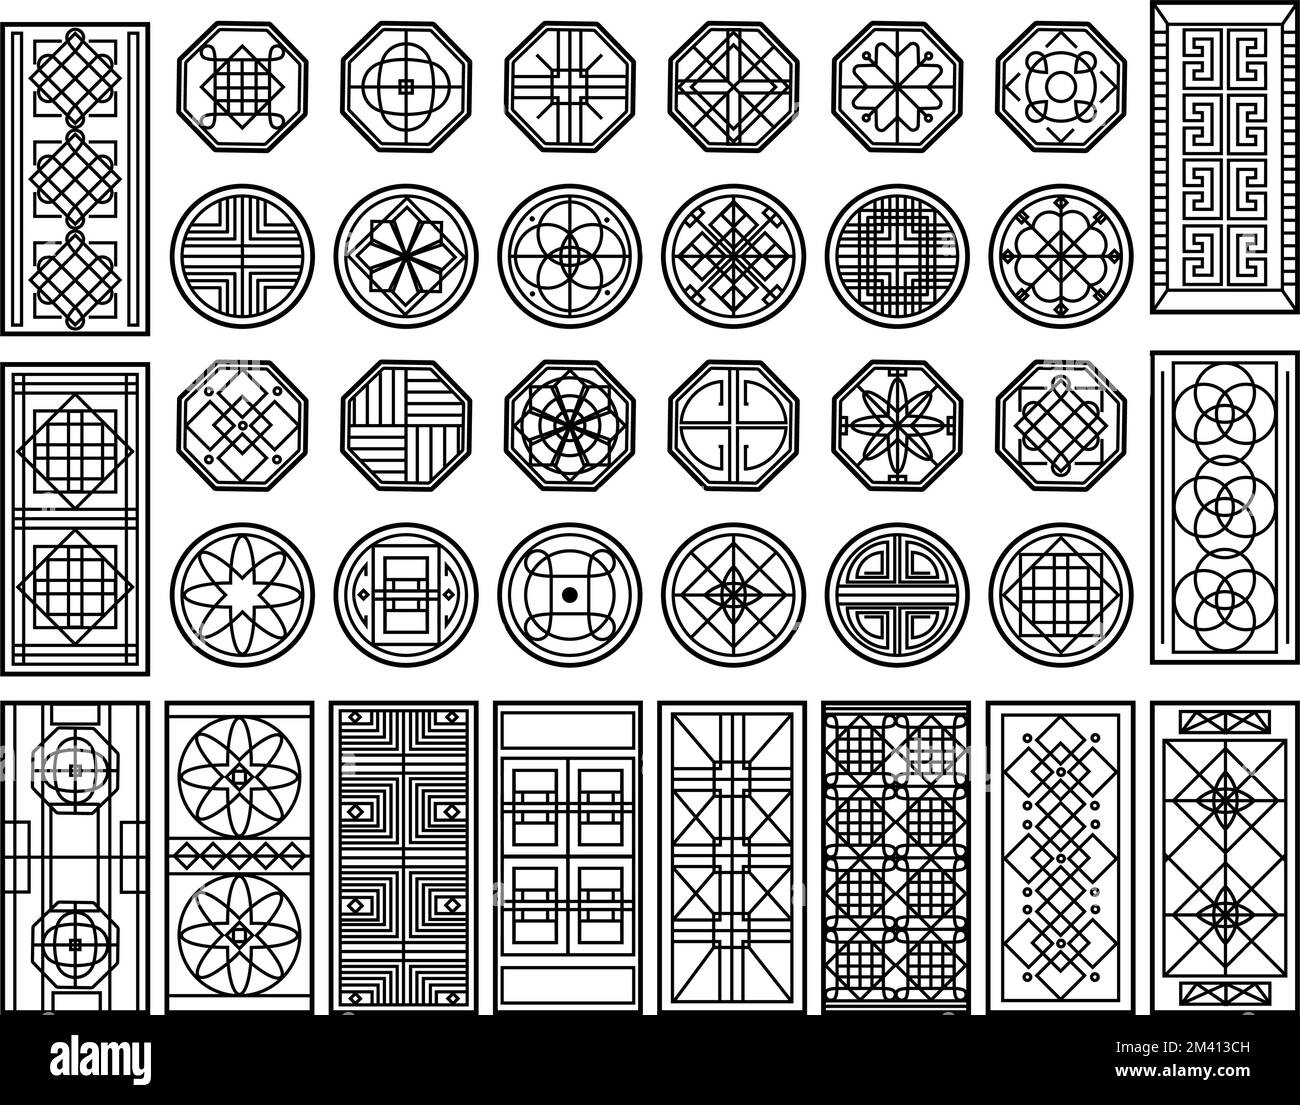 Finestra tradizionale coreana. Ornamento circolare, decoro rettangolare con taglio geometrico e set vettoriale di elementi grafici asiatici Illustrazione Vettoriale